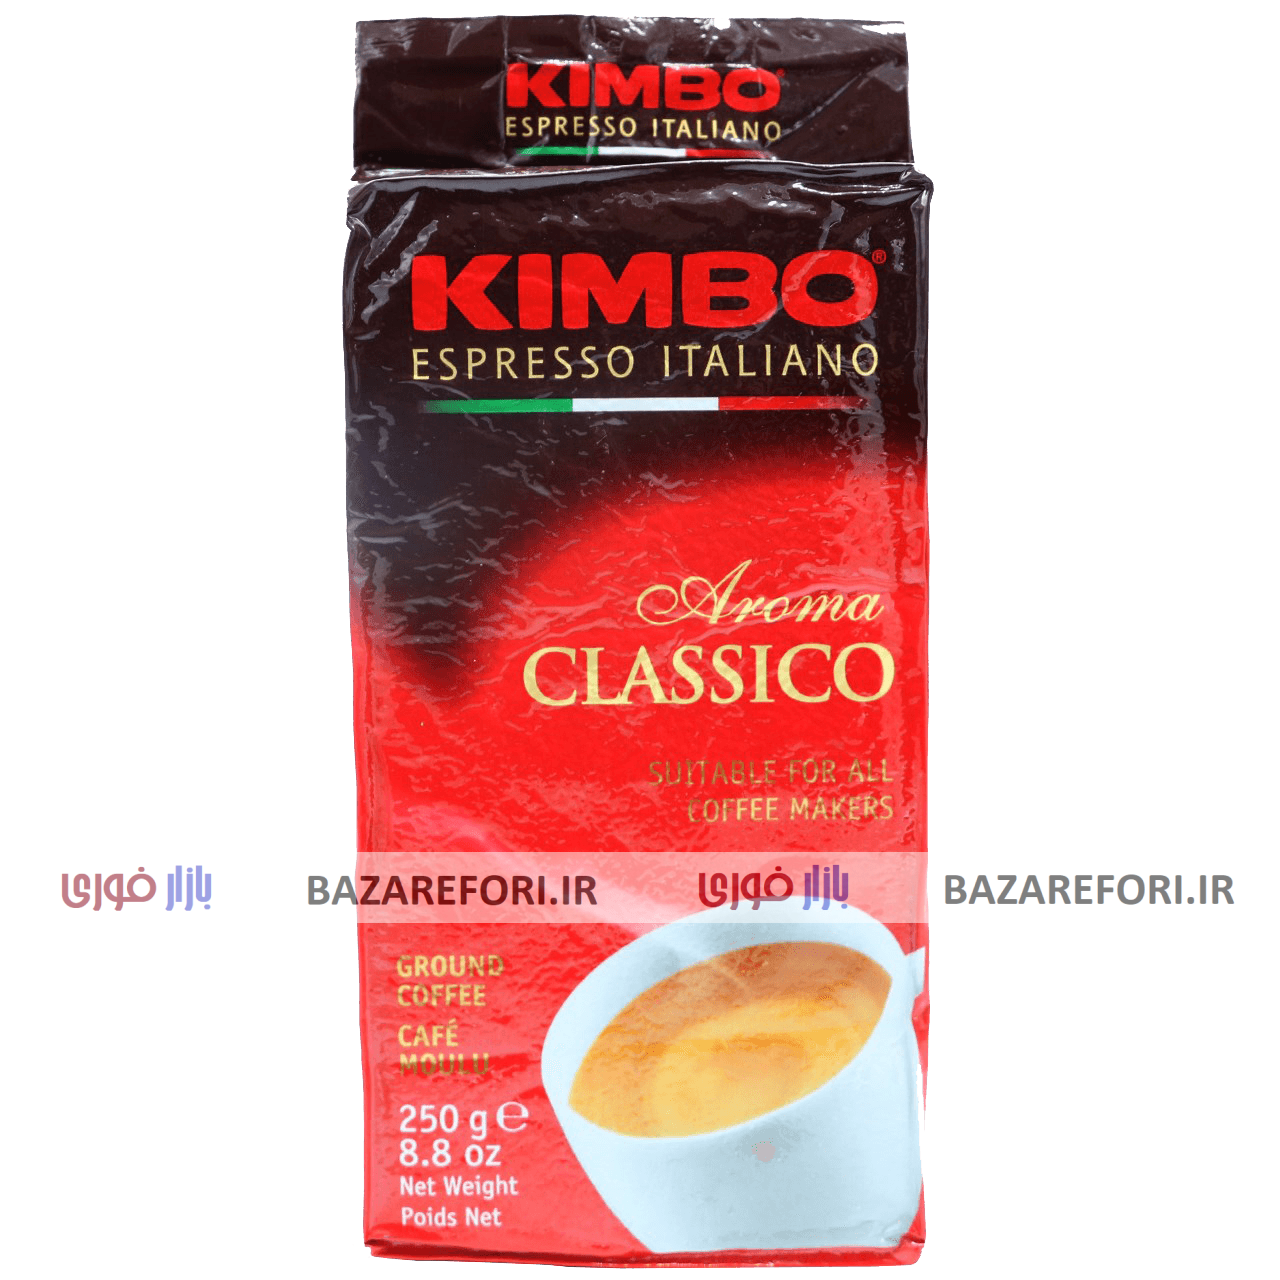 بسته قهوه کیمبو مدل Classico حجم 250 گرم